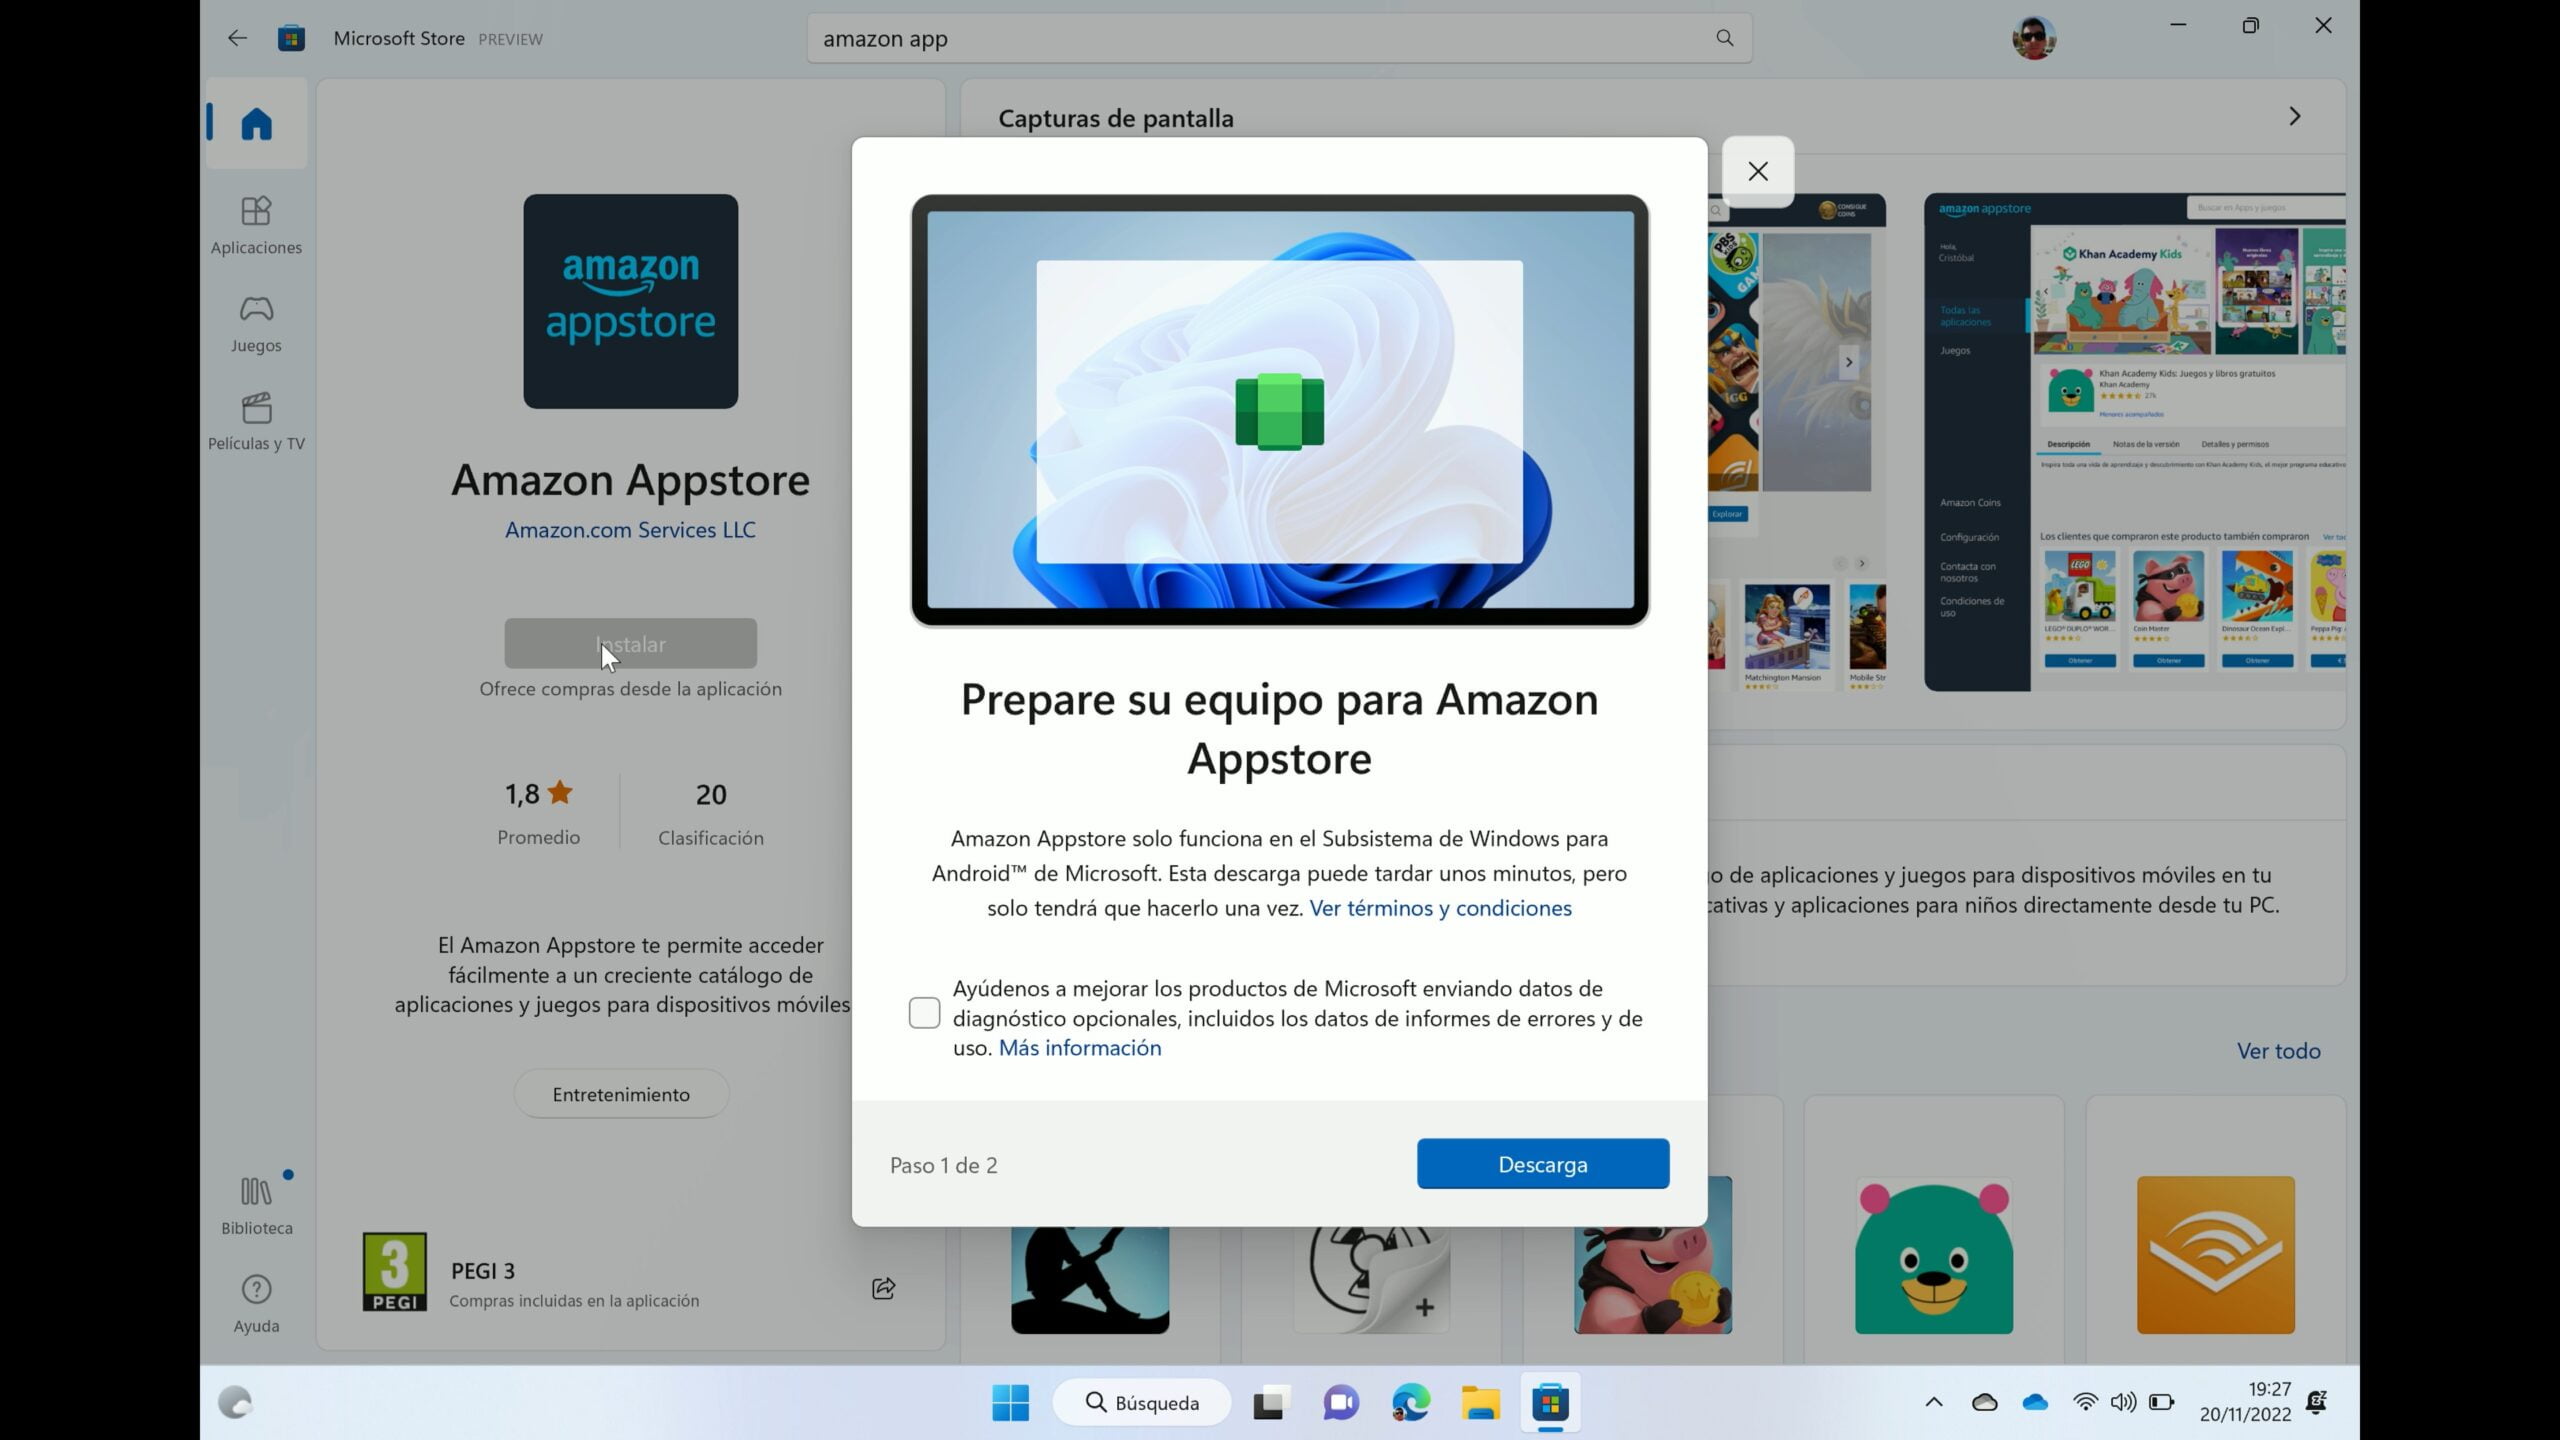 Captura del mensaje "Prepare su equipo para Amazon Appstore" donde se avisa de la instalación del Subsistema de Windows para Android